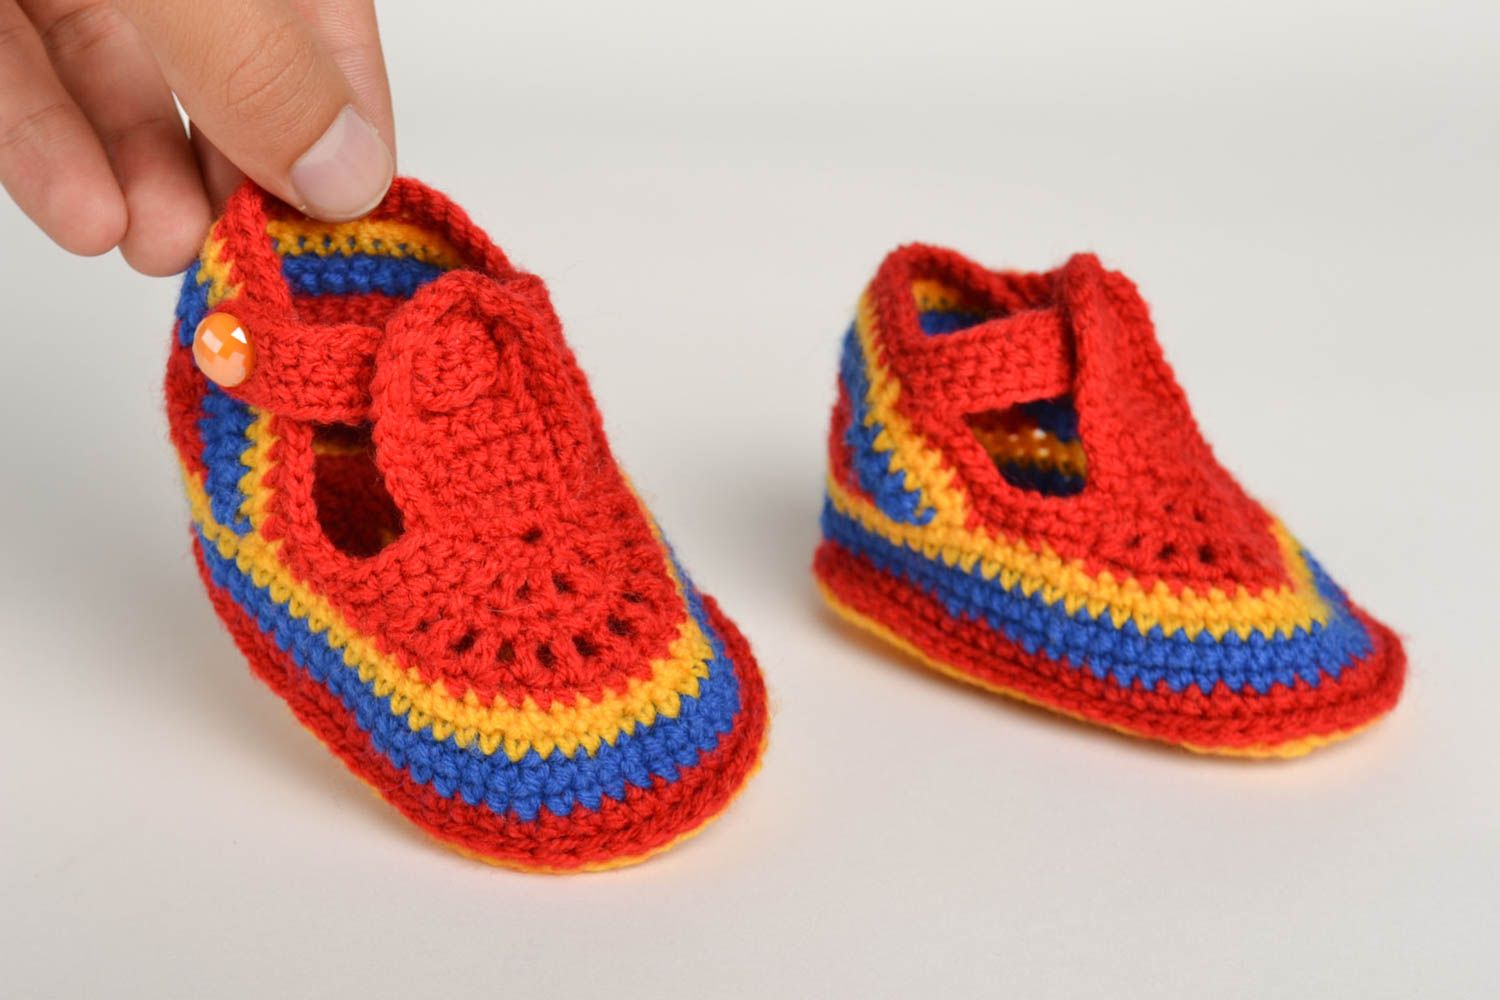 Unusual handmade crochet baby booties warm baby booties baby accessories photo 5